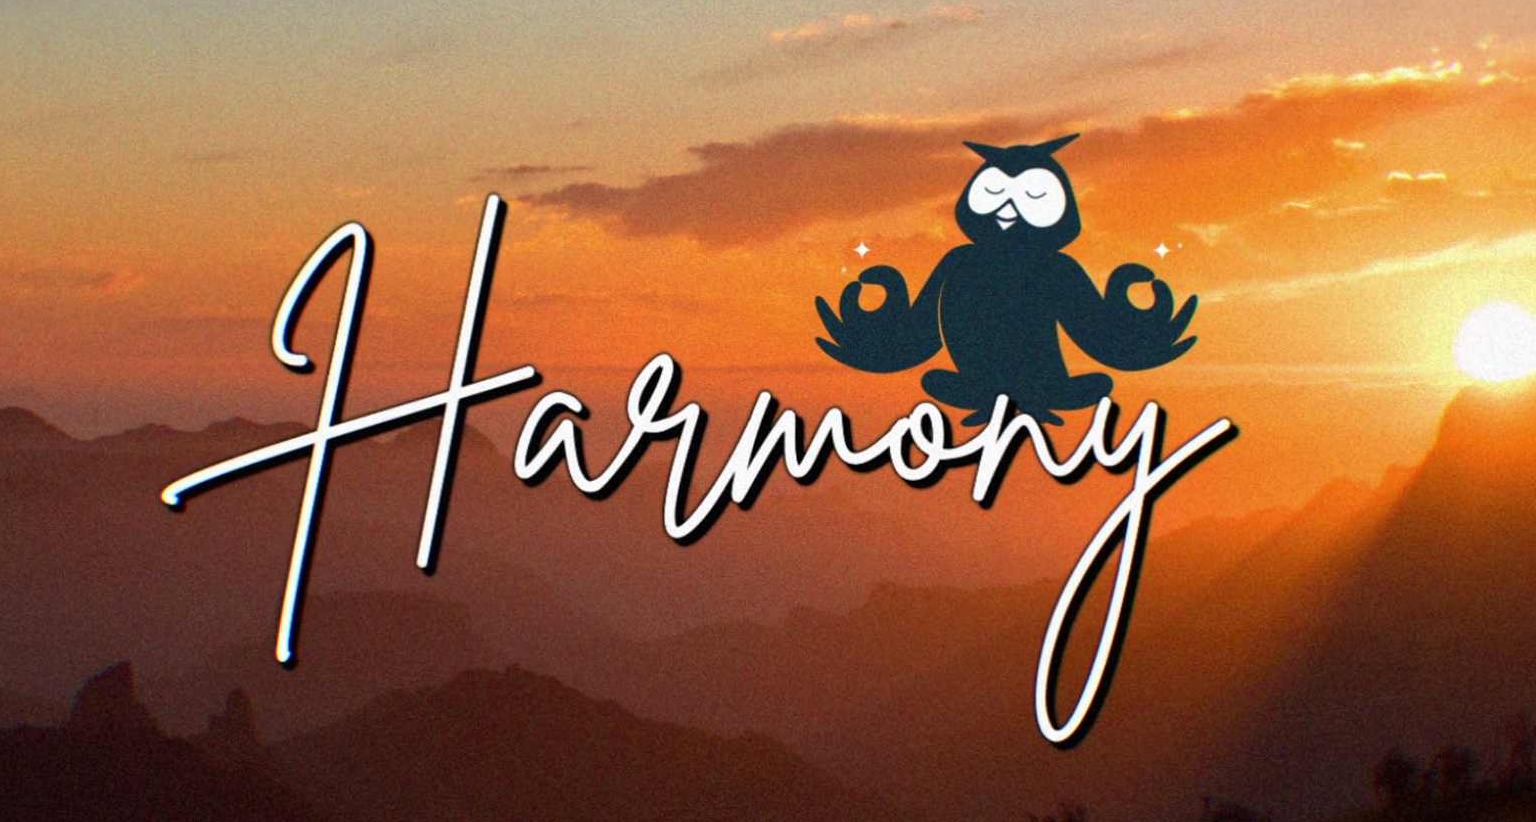 Campaña "Harmmony" de Hootsuite